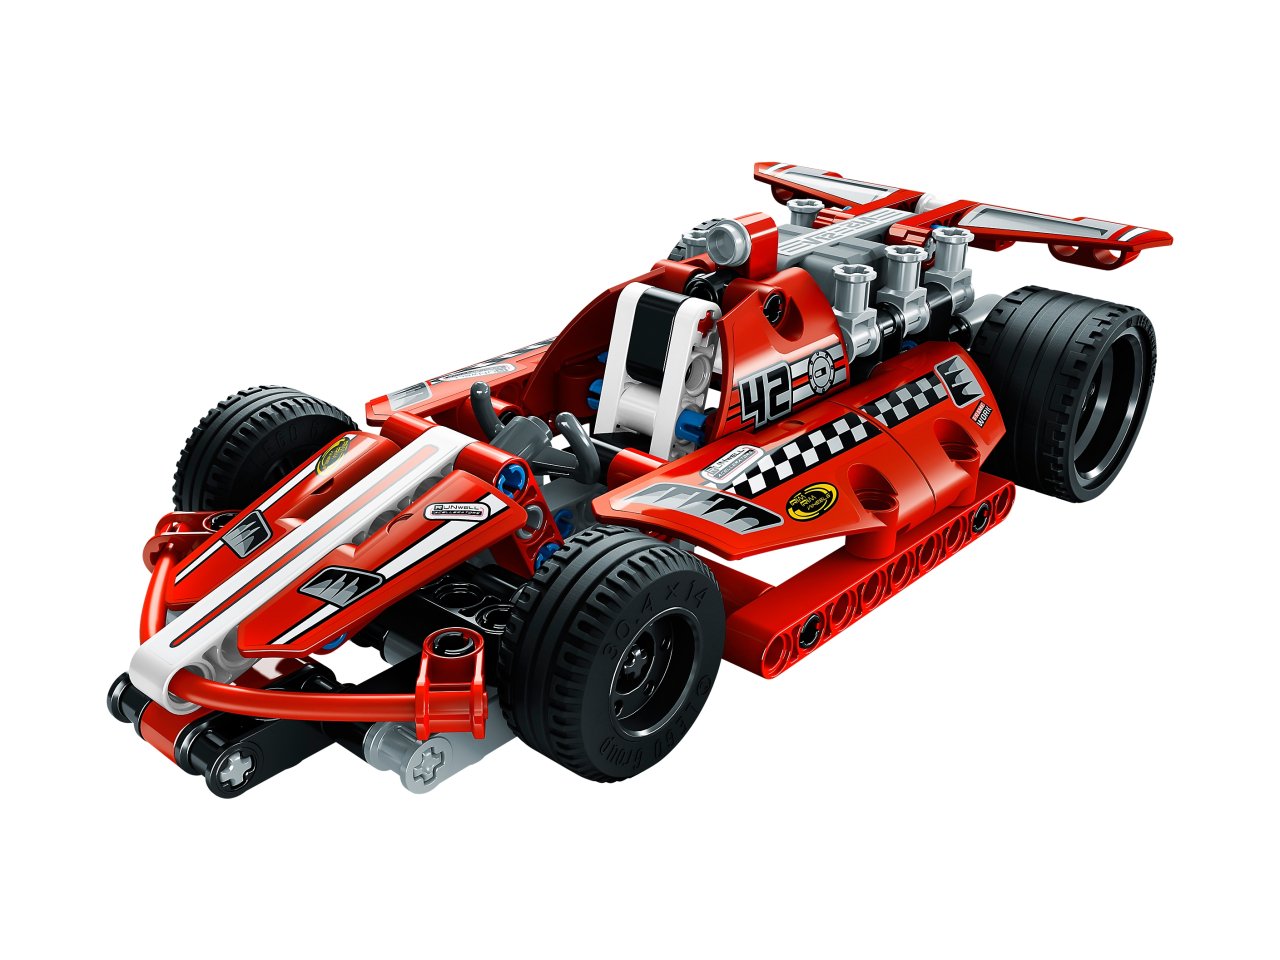 42011 LEGO Technic Samochód wyścigowy